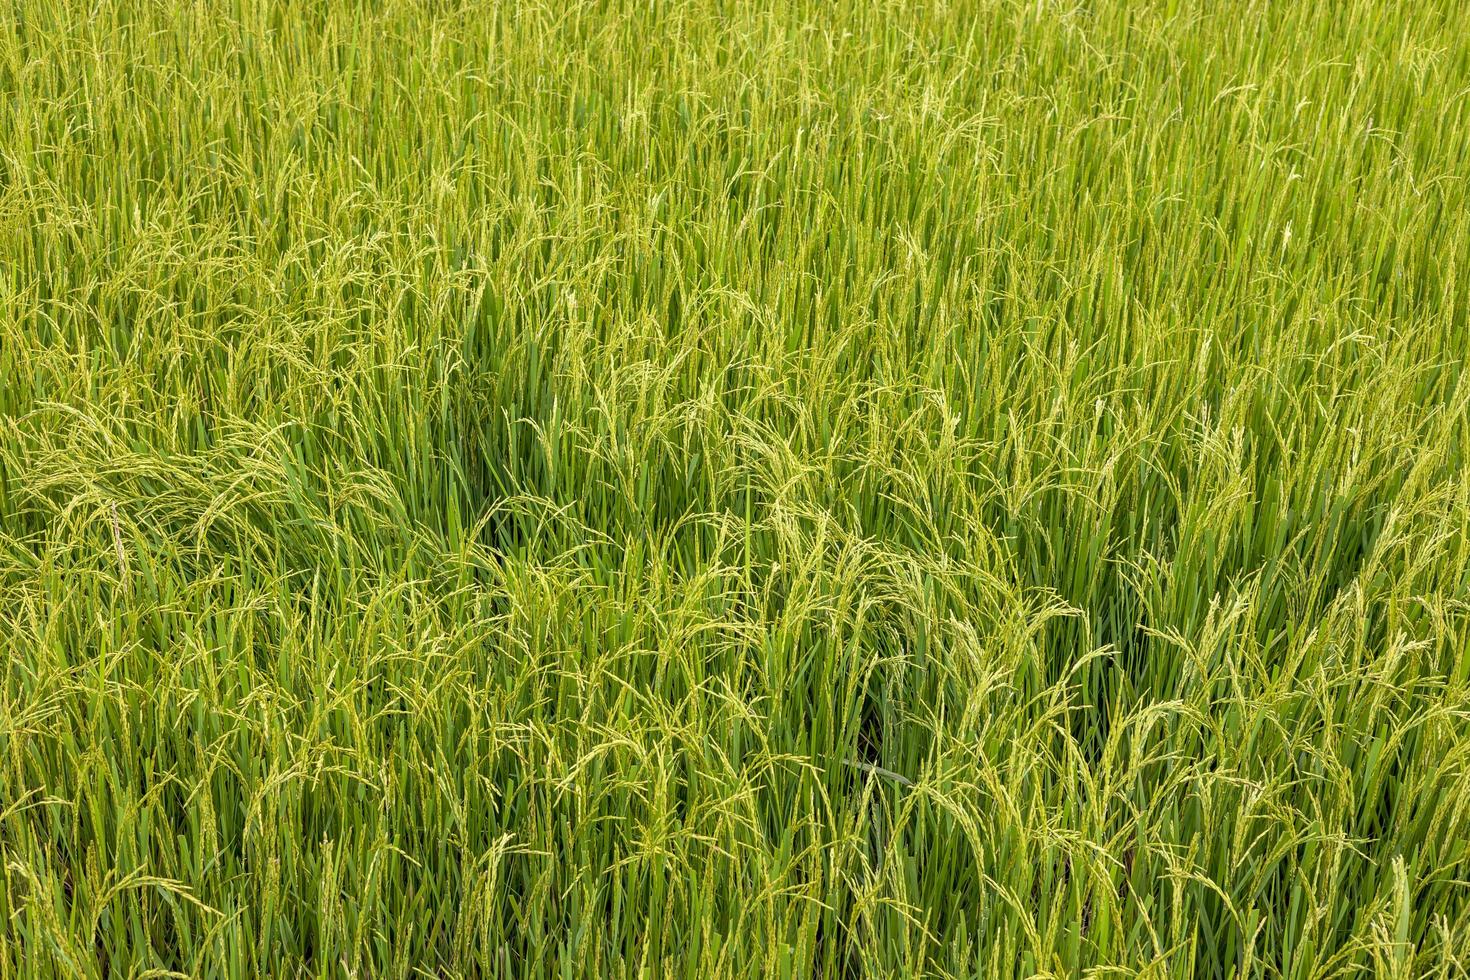 vue d'arrière-plan de rizières vertes fertiles qui poussent en attendant le jour de la récolte. photo